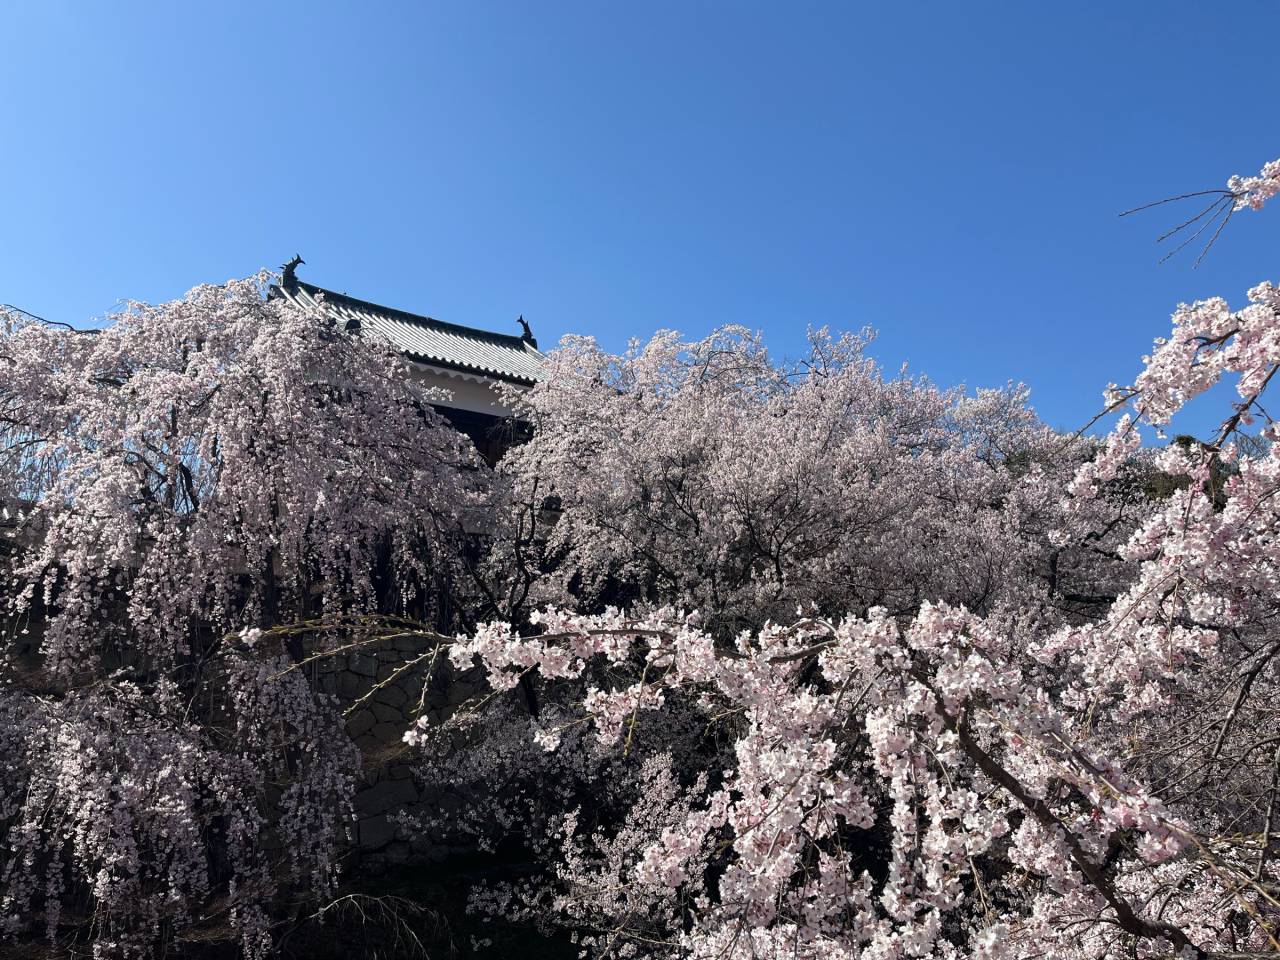 上田城跡公園の花見・桜情報を掲載！今は何分咲き？最新の桜の開花状況を確認して、お花見の計画の参考に。